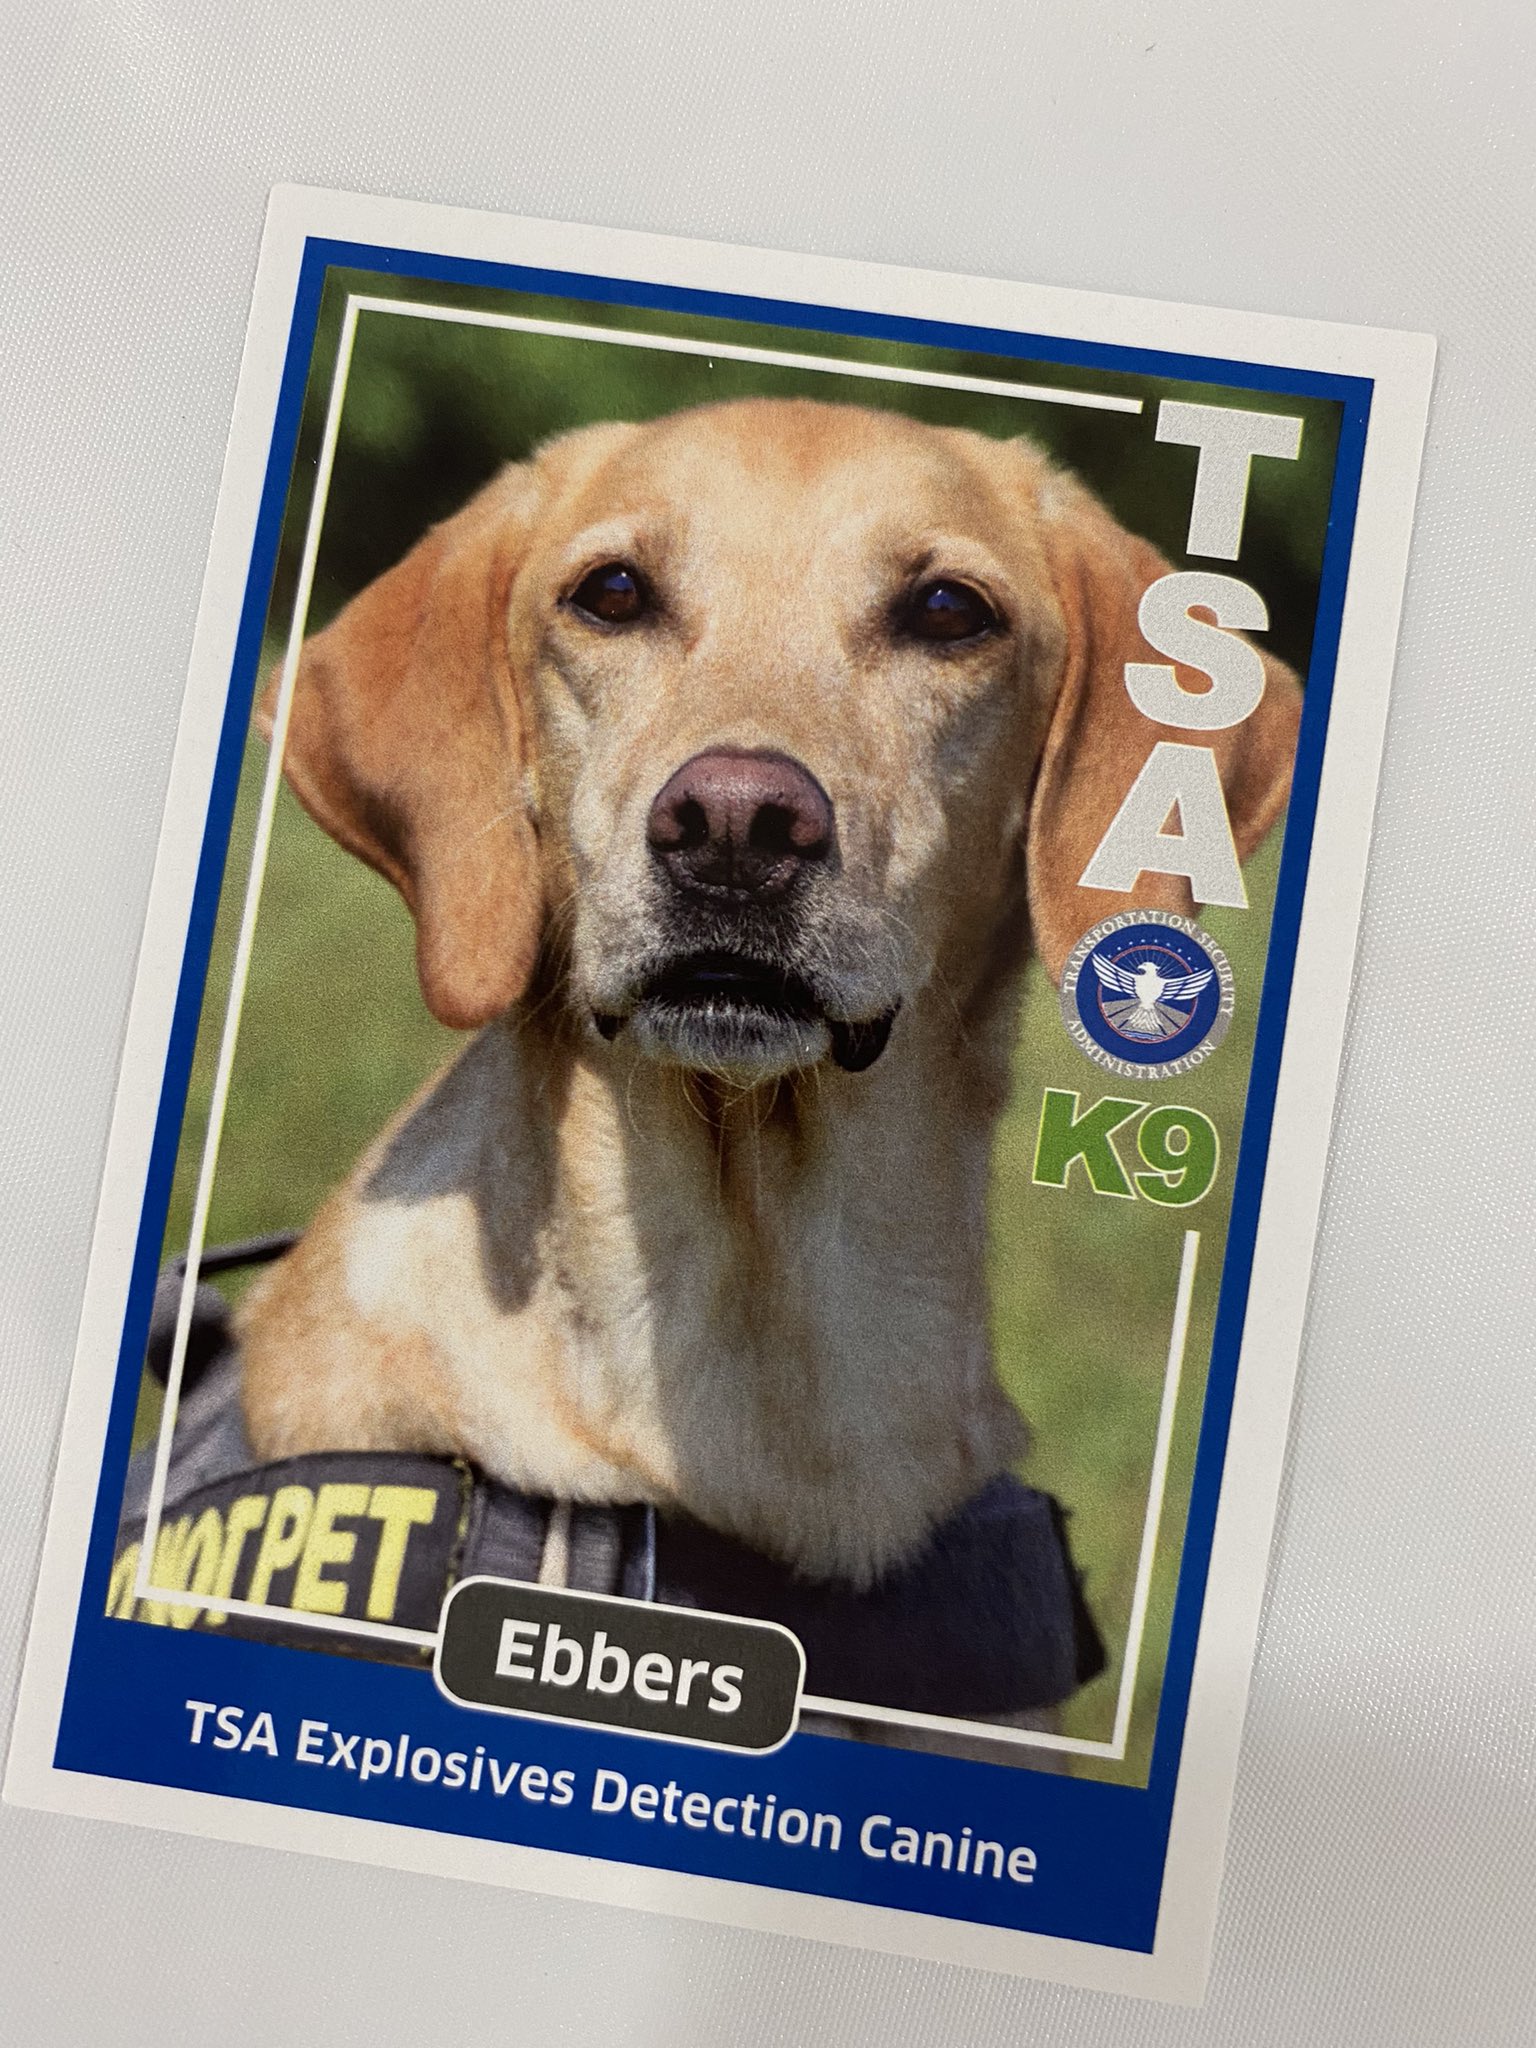 Eebers the TSA dog.